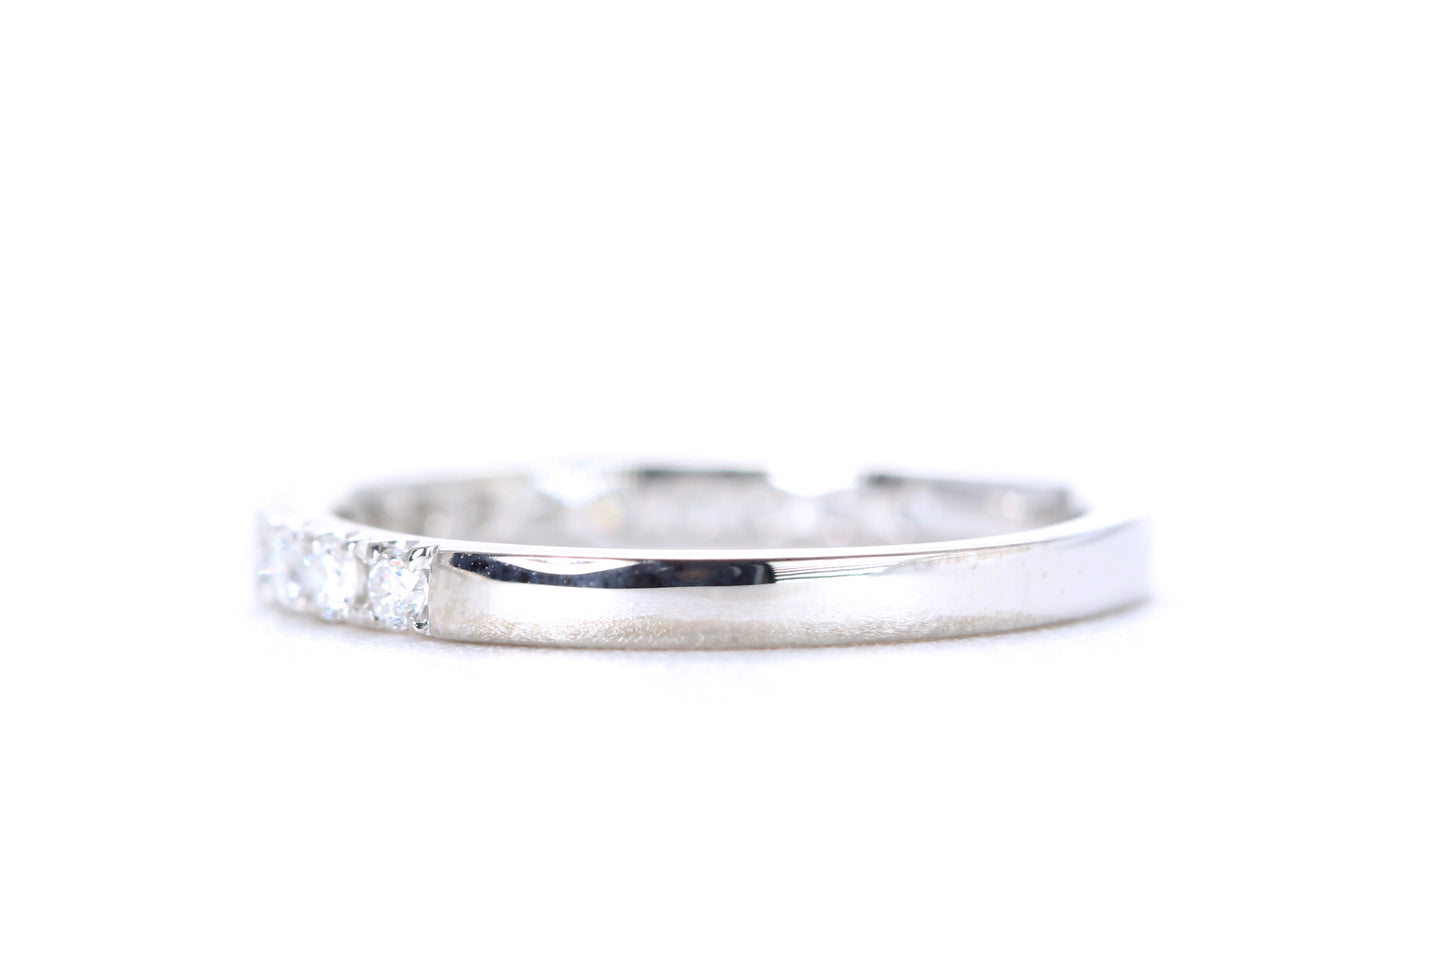 Micro Pavé Diamond Ring 1/2 Carat in Platinum